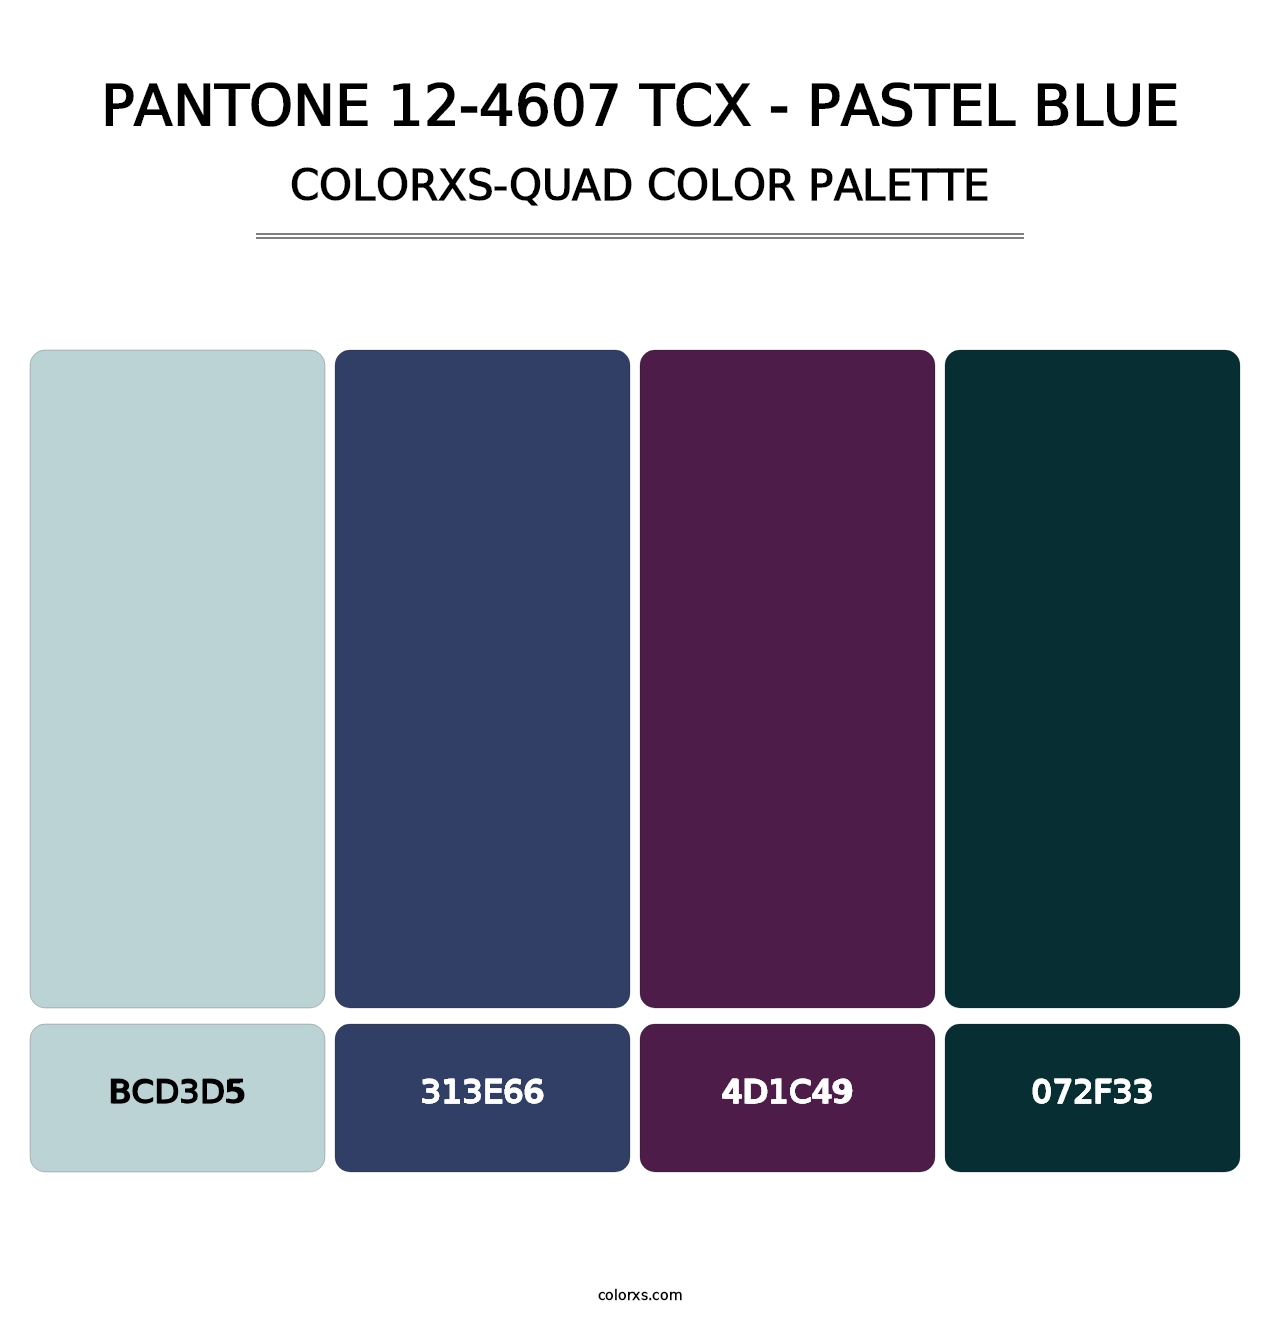 PANTONE 12-4607 TCX - Pastel Blue - Colorxs Quad Palette